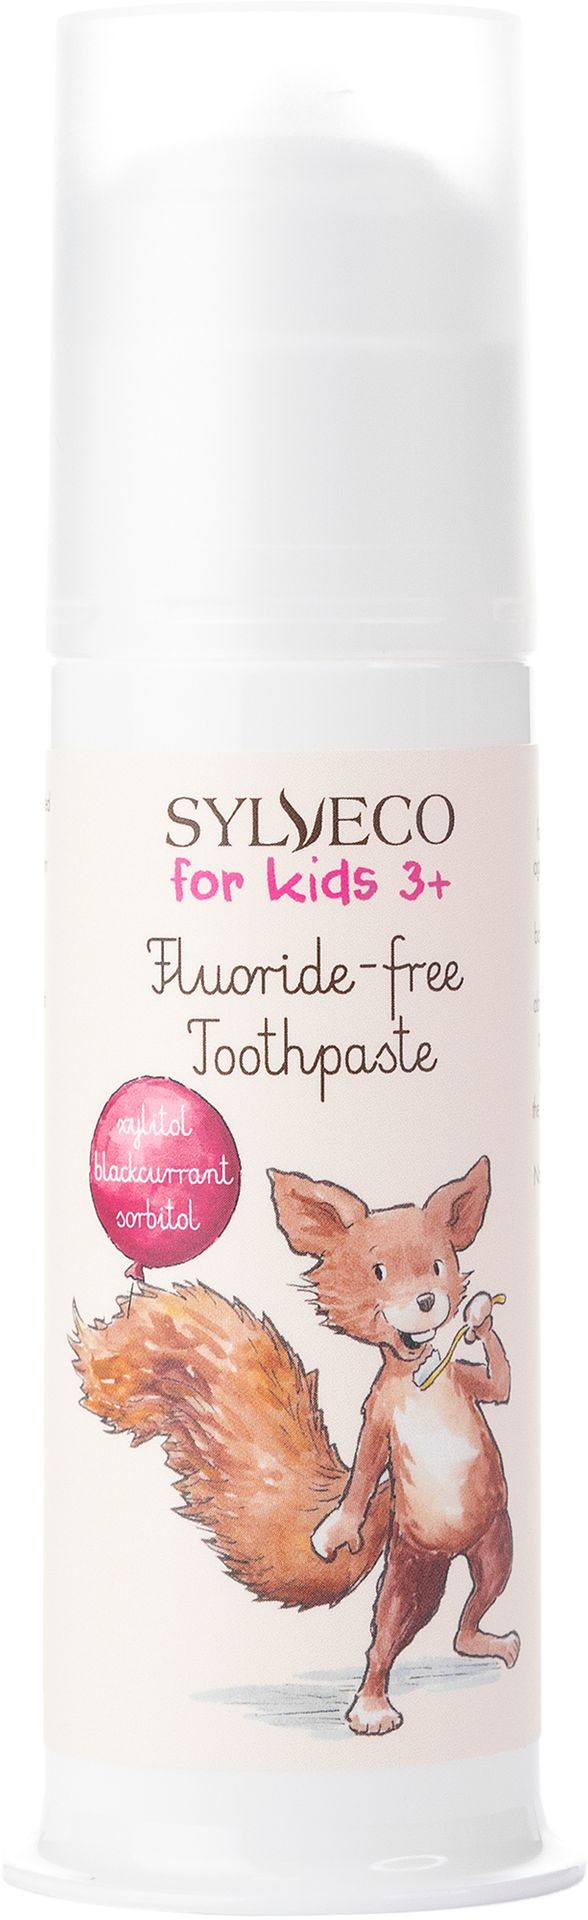 Sylveco Fluoride-free Toothpaste - pasta do zębów bez fluoru dla dzieci 75 ml